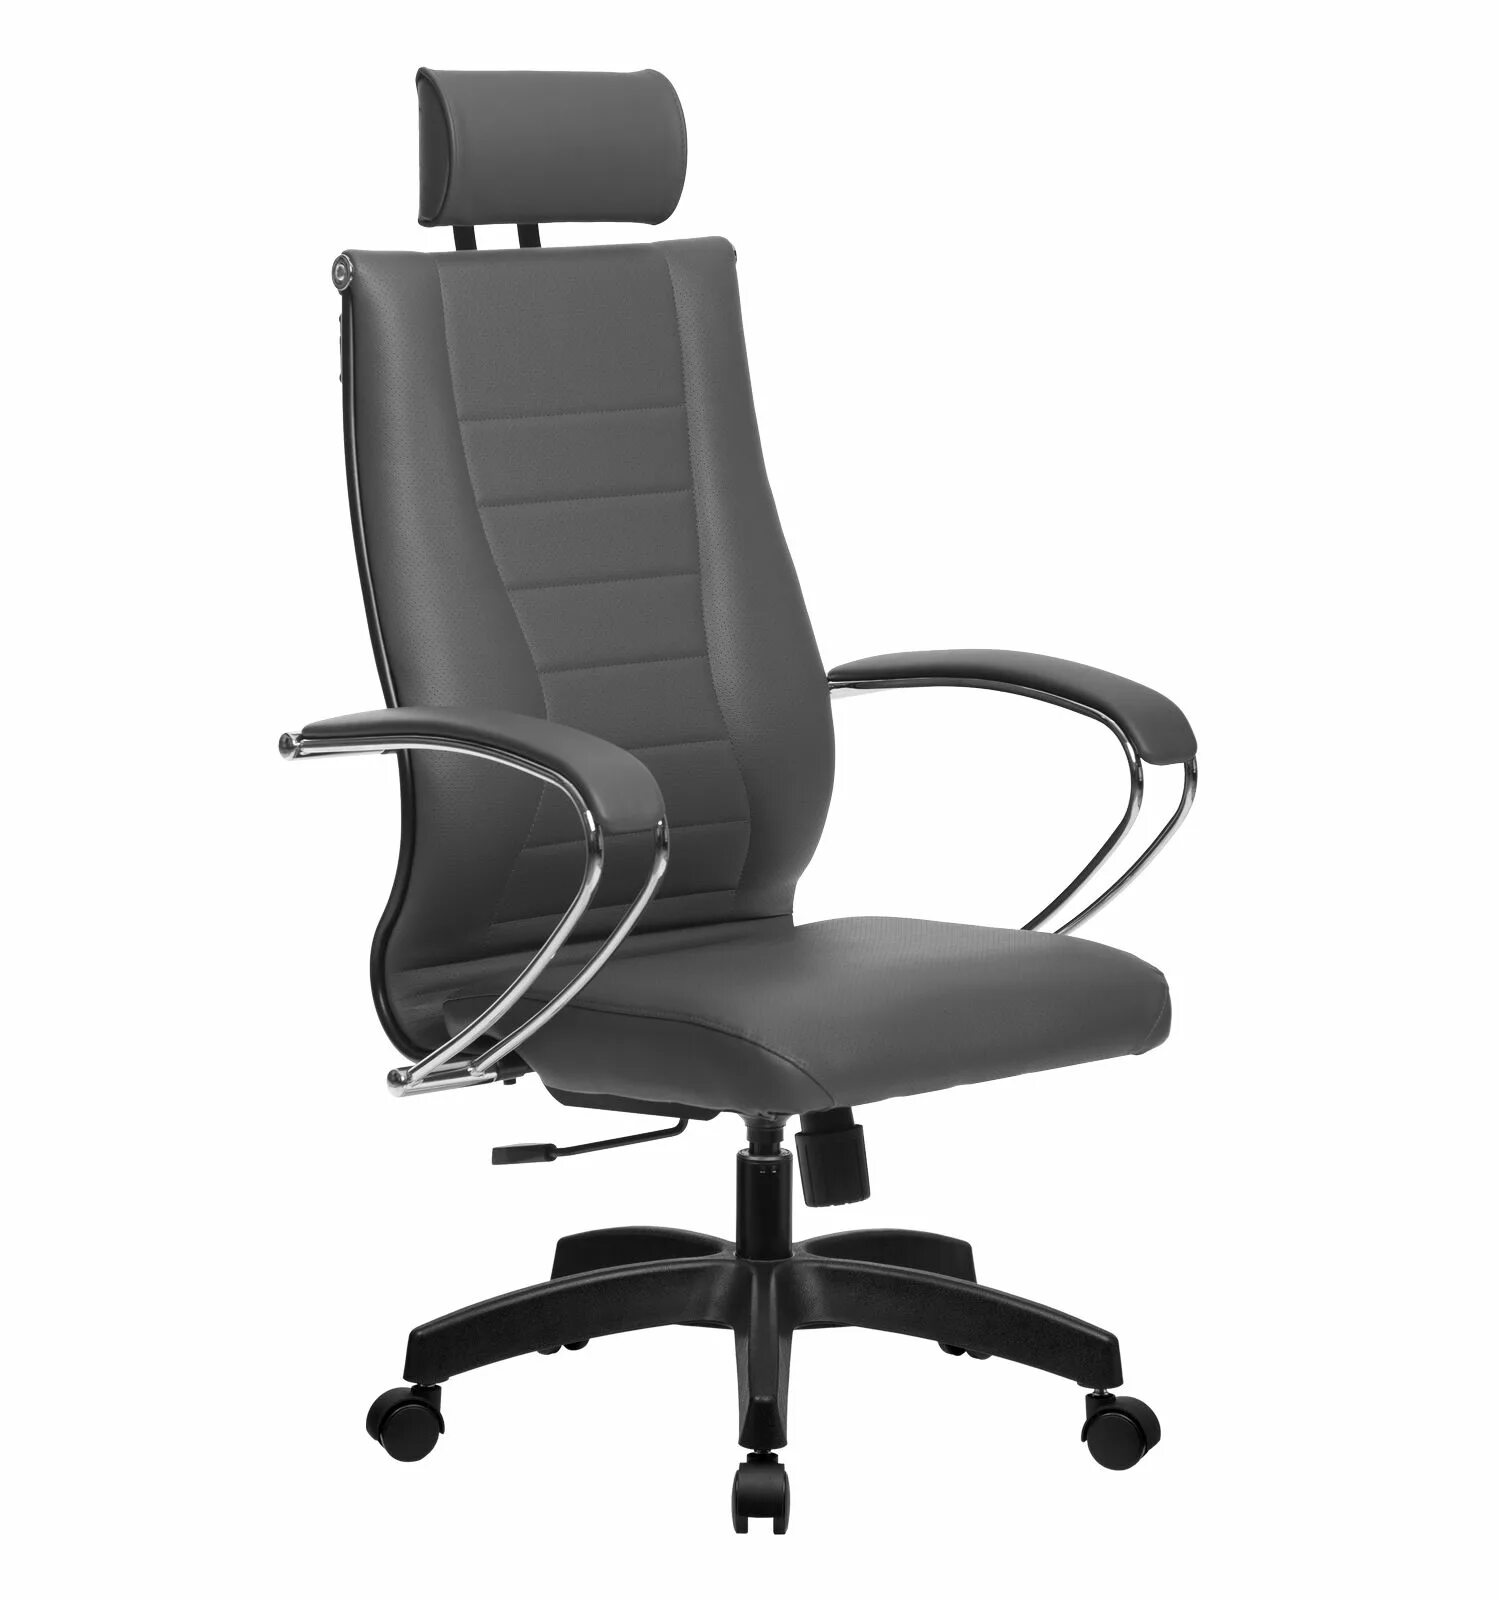 Новые офисные кресла. Кресло офисное BP-1pl. Компьютерное кресло Метта BP-8 pl. Кресло Метта BP-8 pl чёрный. Кресло офисное Metta BK-10ch.